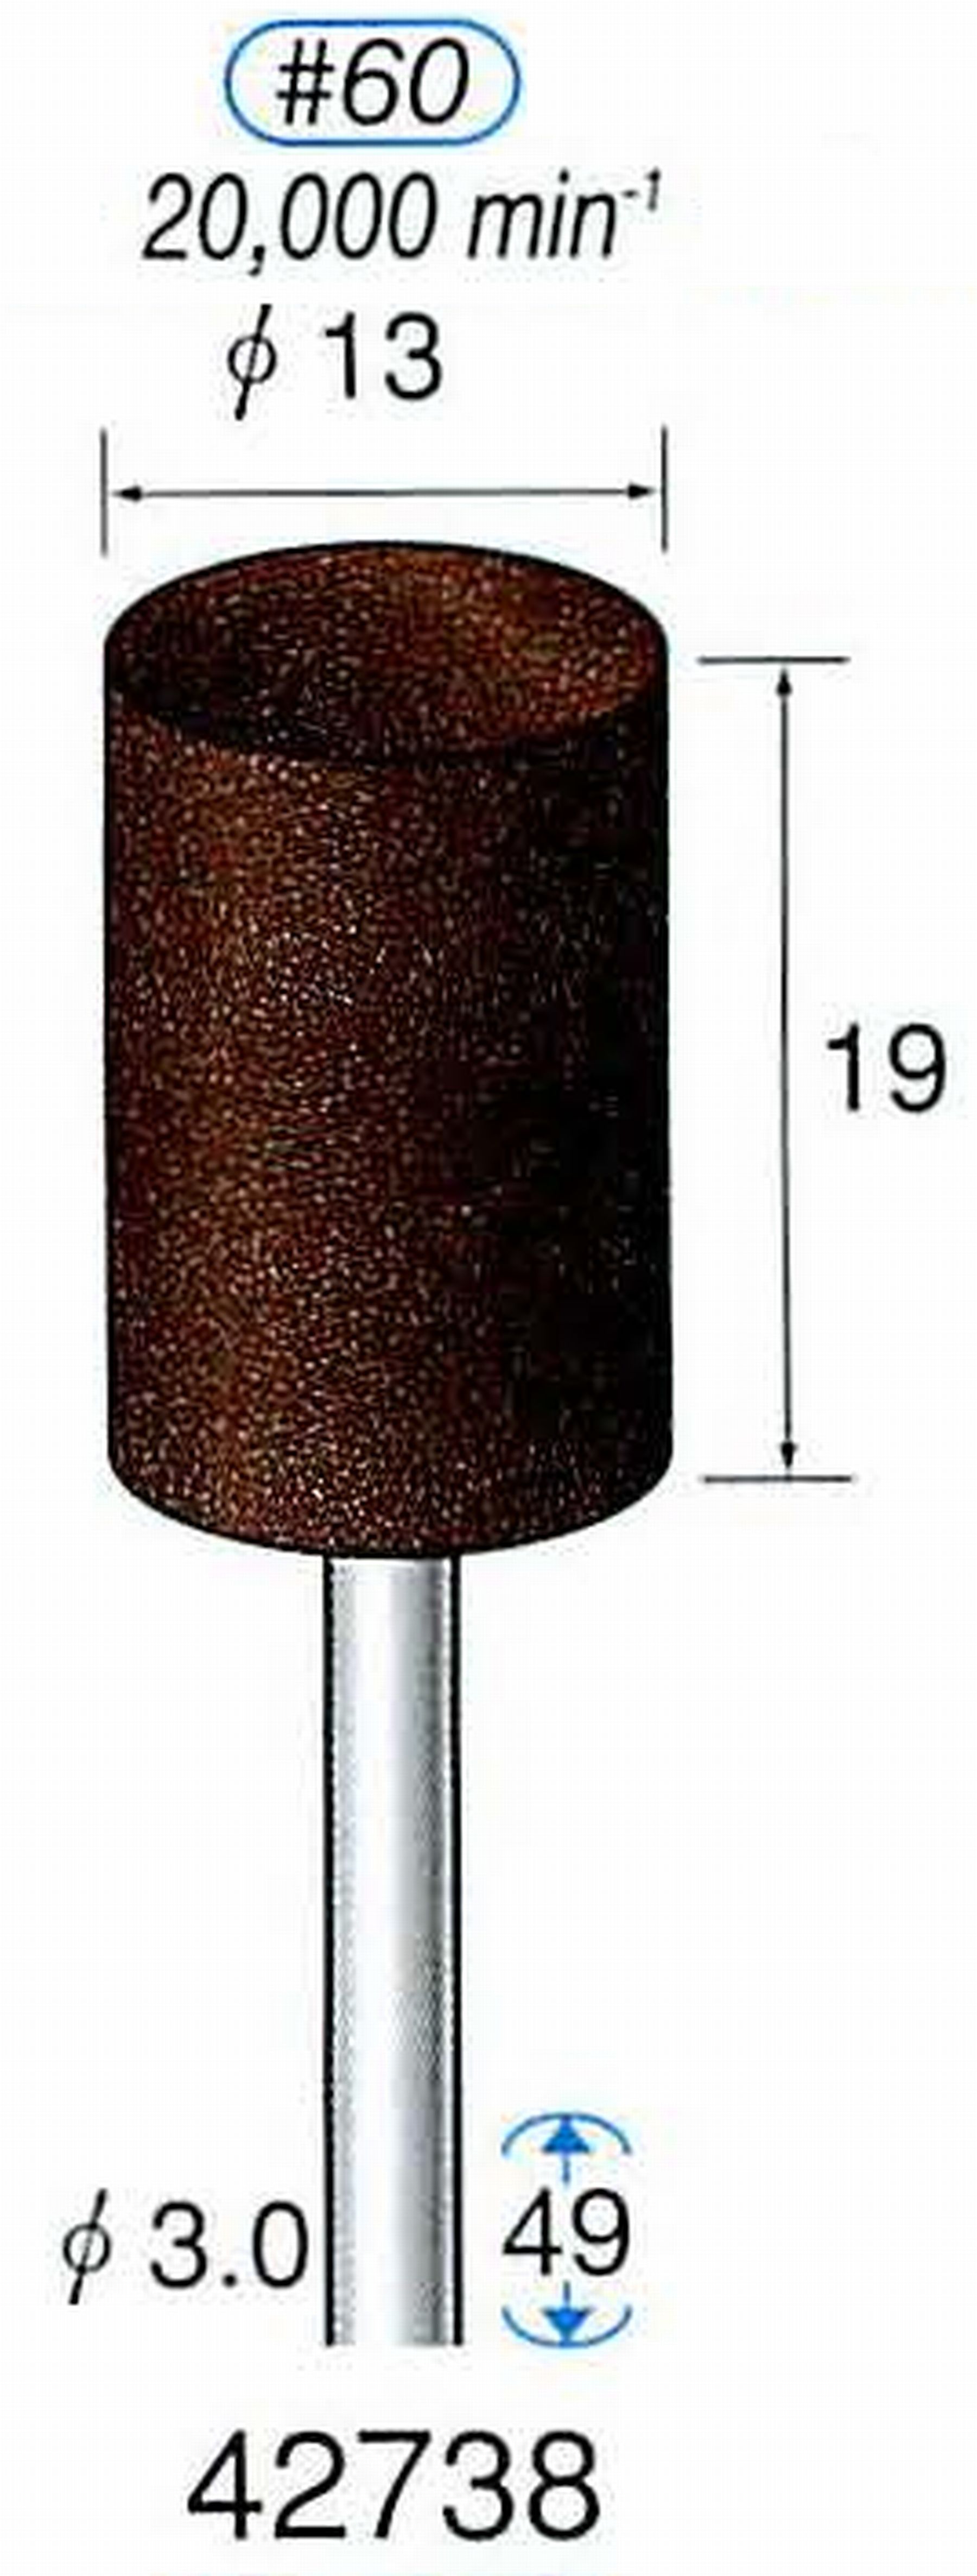 ナカニシ/NAKANISHI 軸付砥石(A・WA砥粒) ブラウン砥石 軸径(シャンク) φ3.0mm 42738